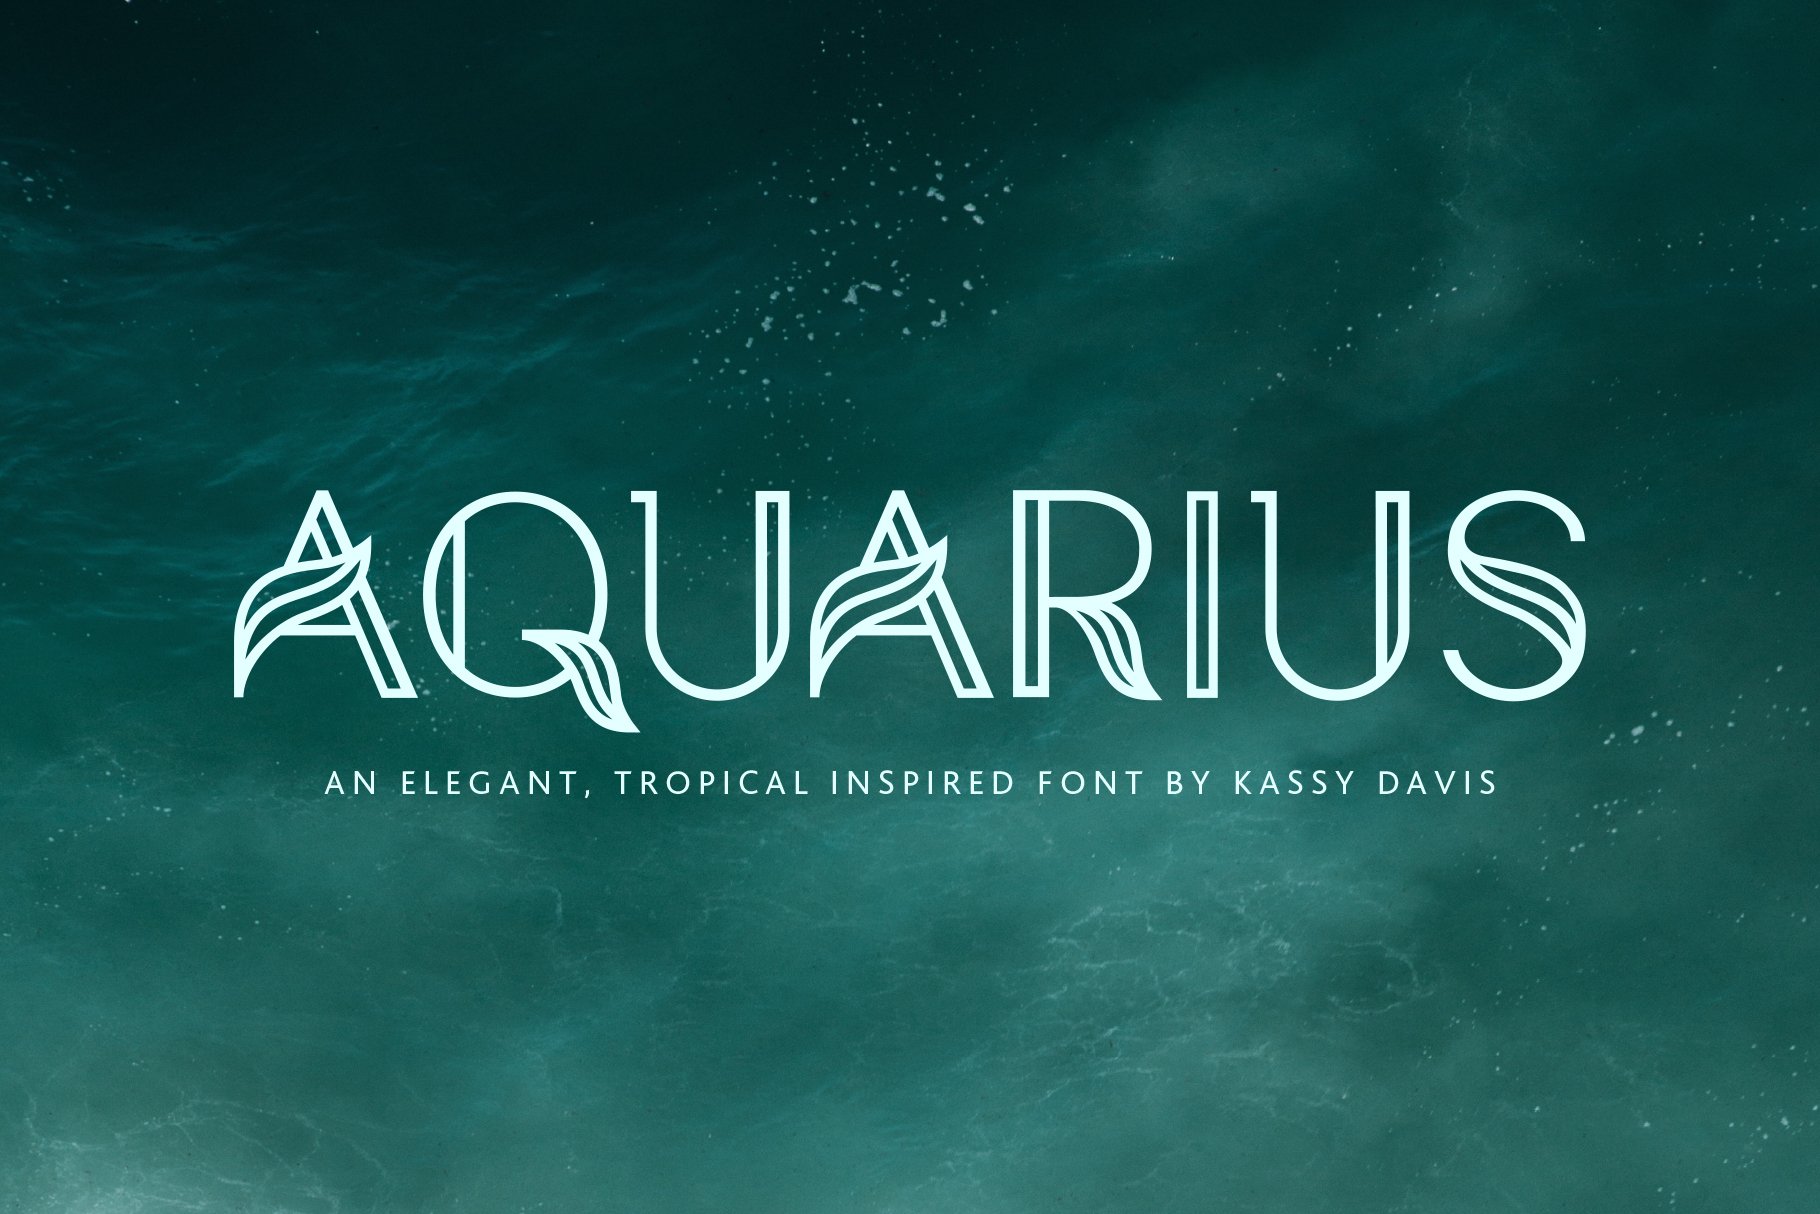 Aquarius – A Tropical Font Family cover image.